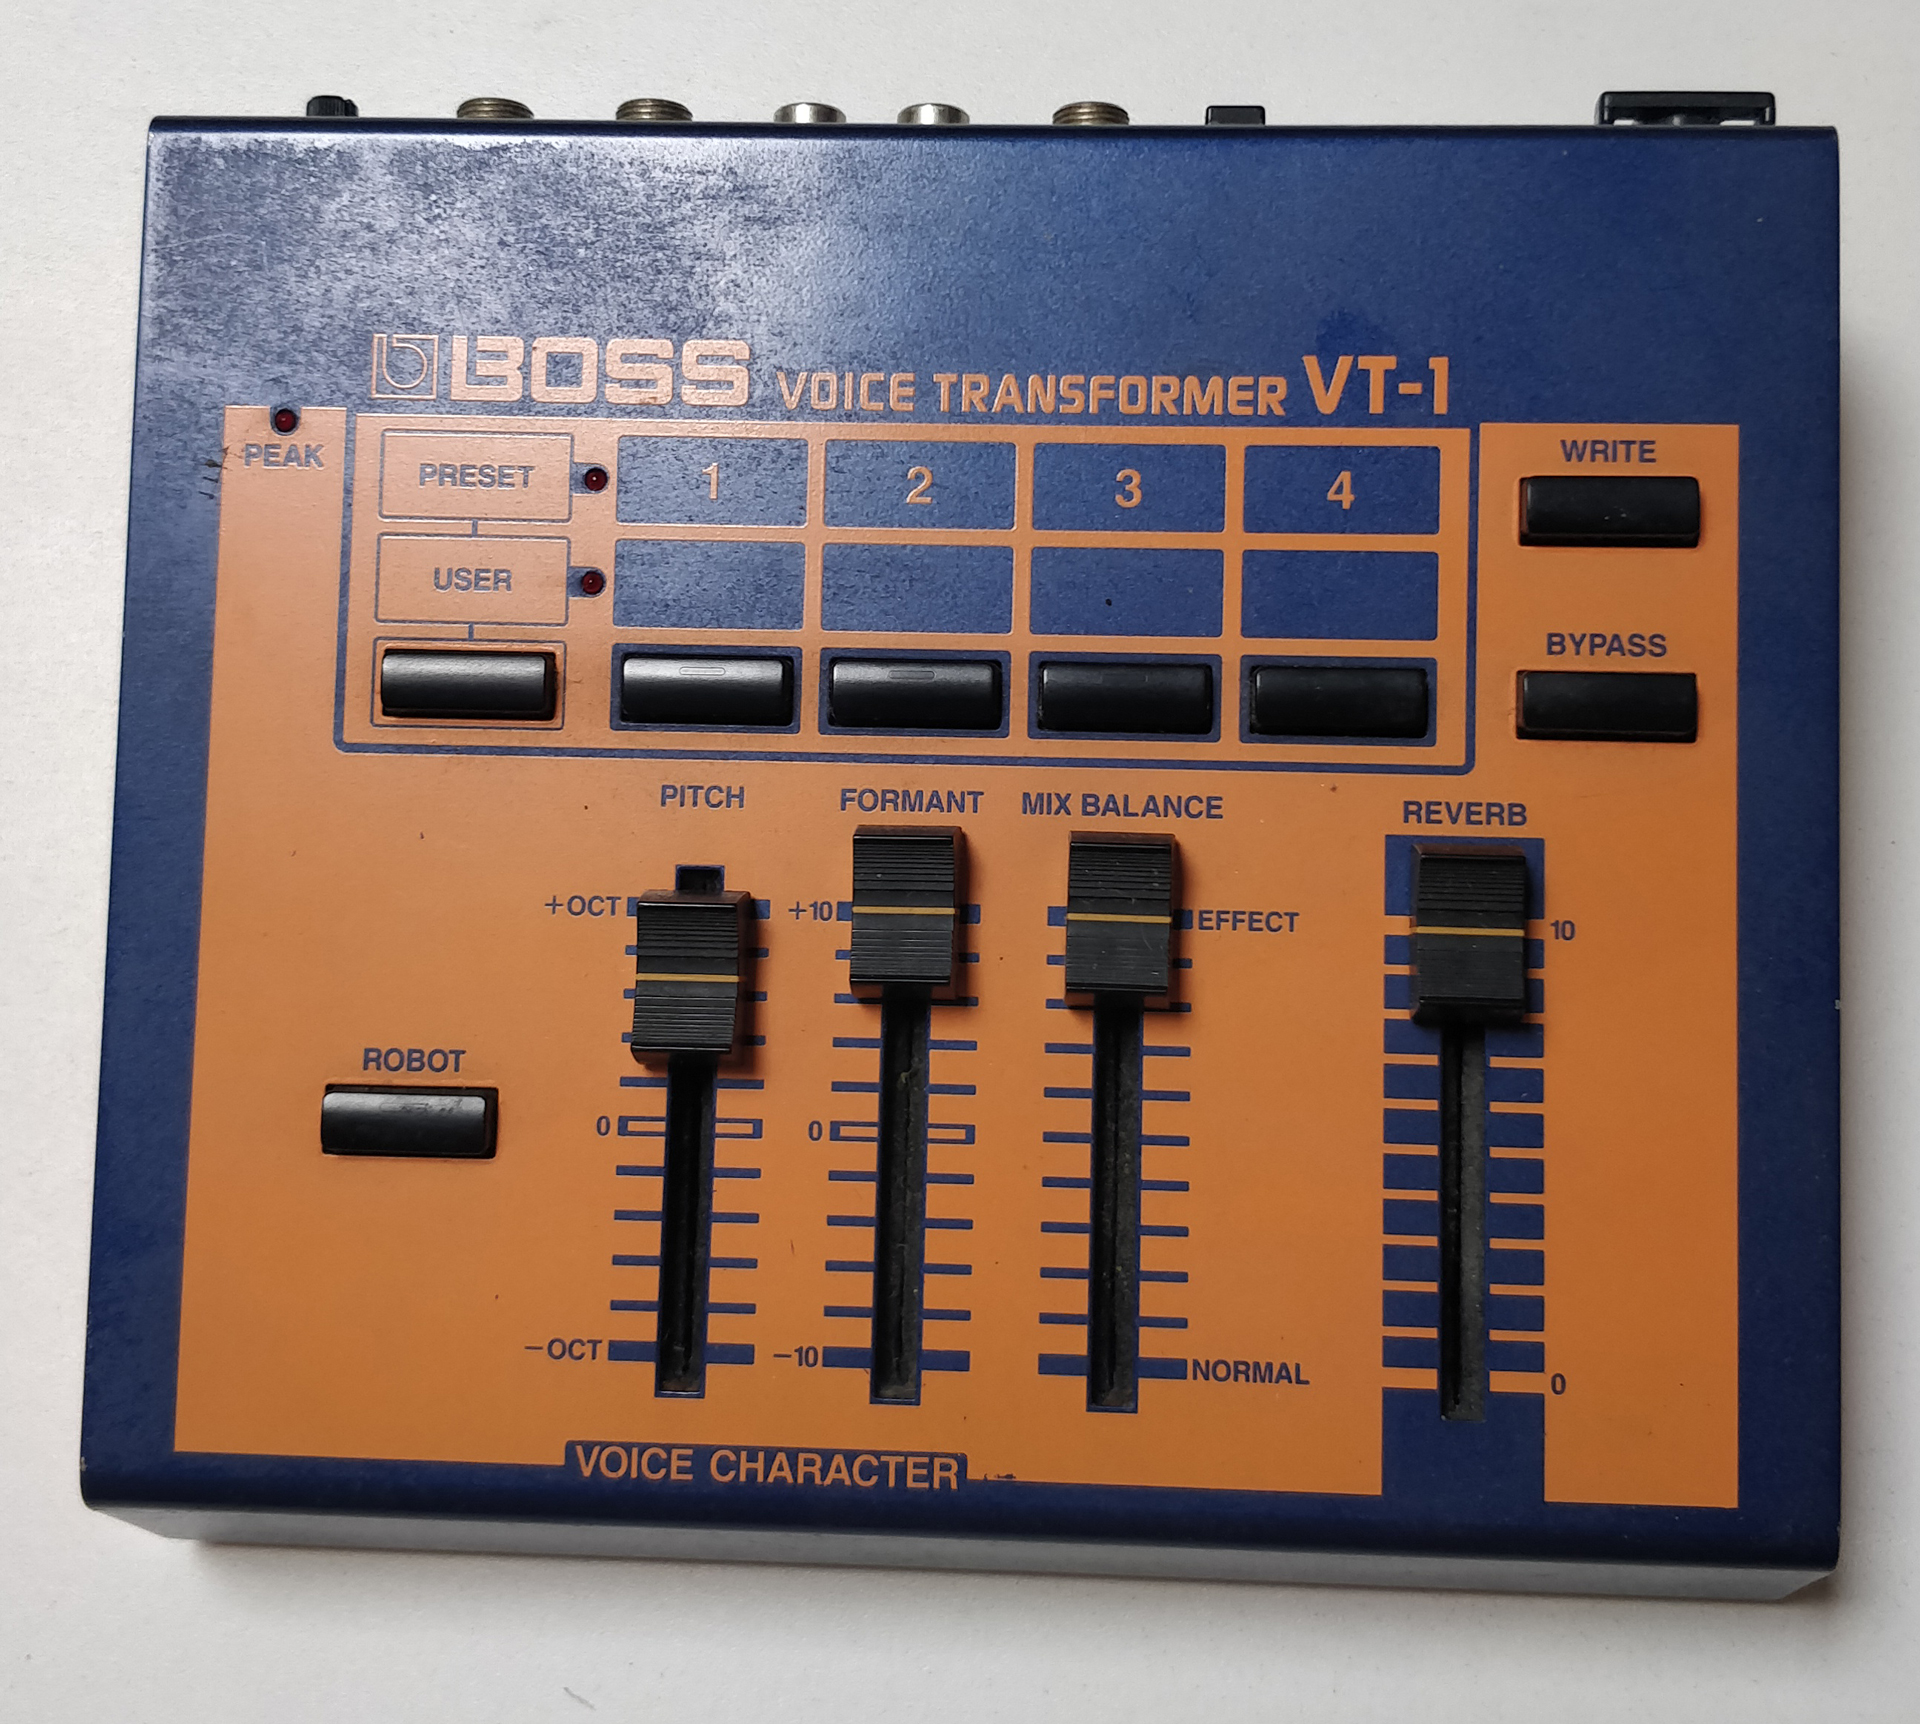 VT-1 Voice Transformer - Boss VT-1 Voice Transformer - Audiofanzine